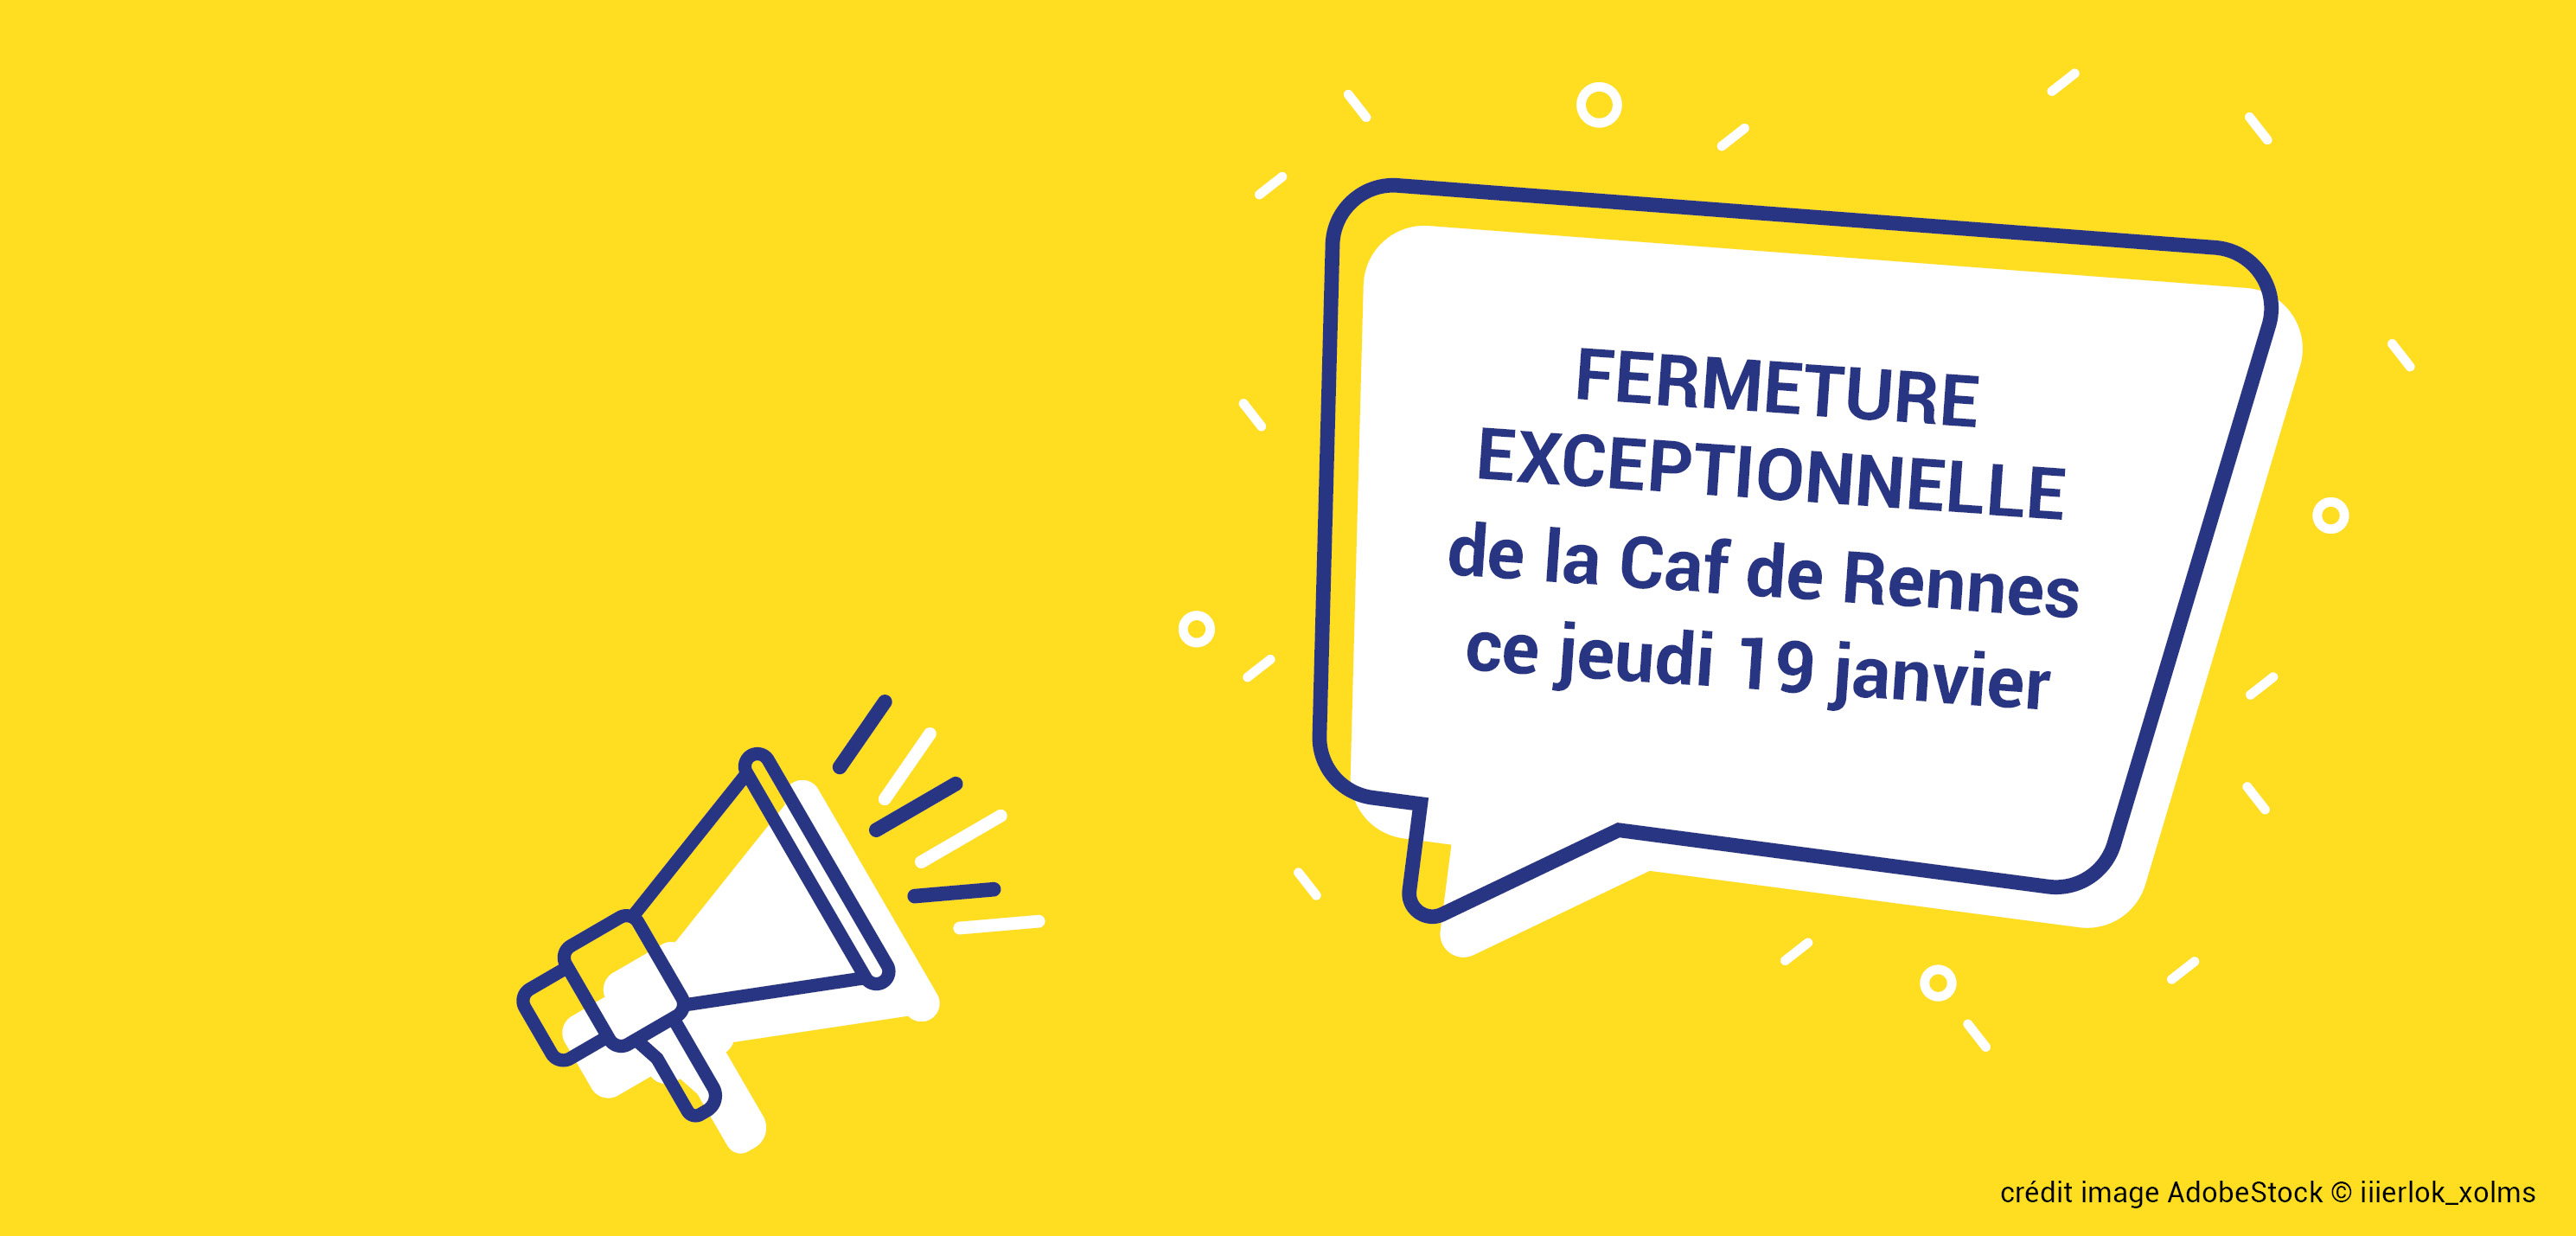 Fermeture exceptionnelle de l'accueil Caf de Rennes le 19 janvier 2023